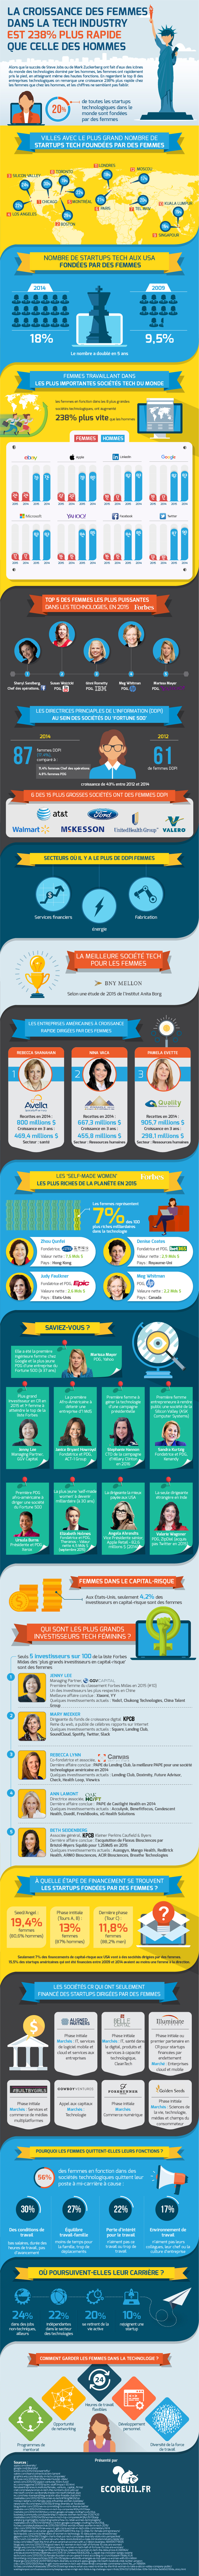 infographie les femmes font leur place dans la tech industry